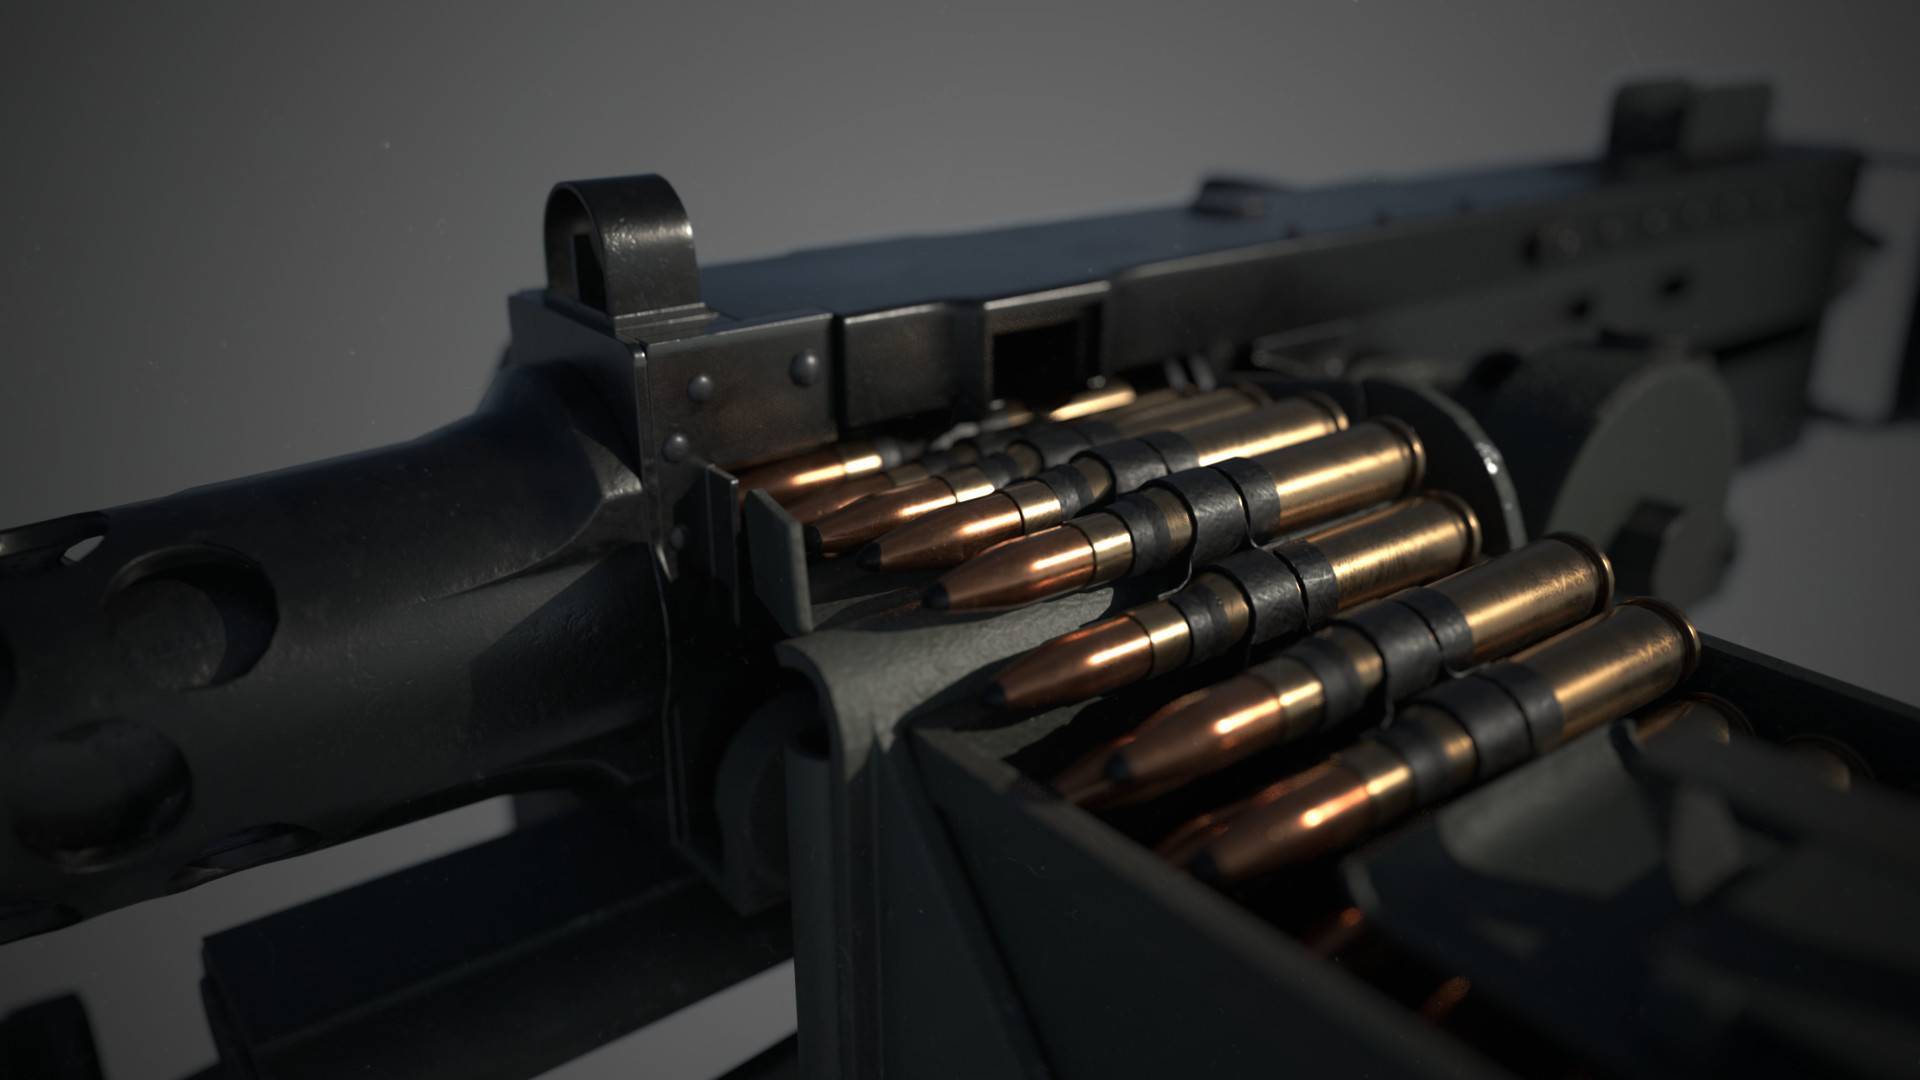 Самые знаменитые пистолеты и оружие конструктора джона браунинга (11 фото + 11 видео)